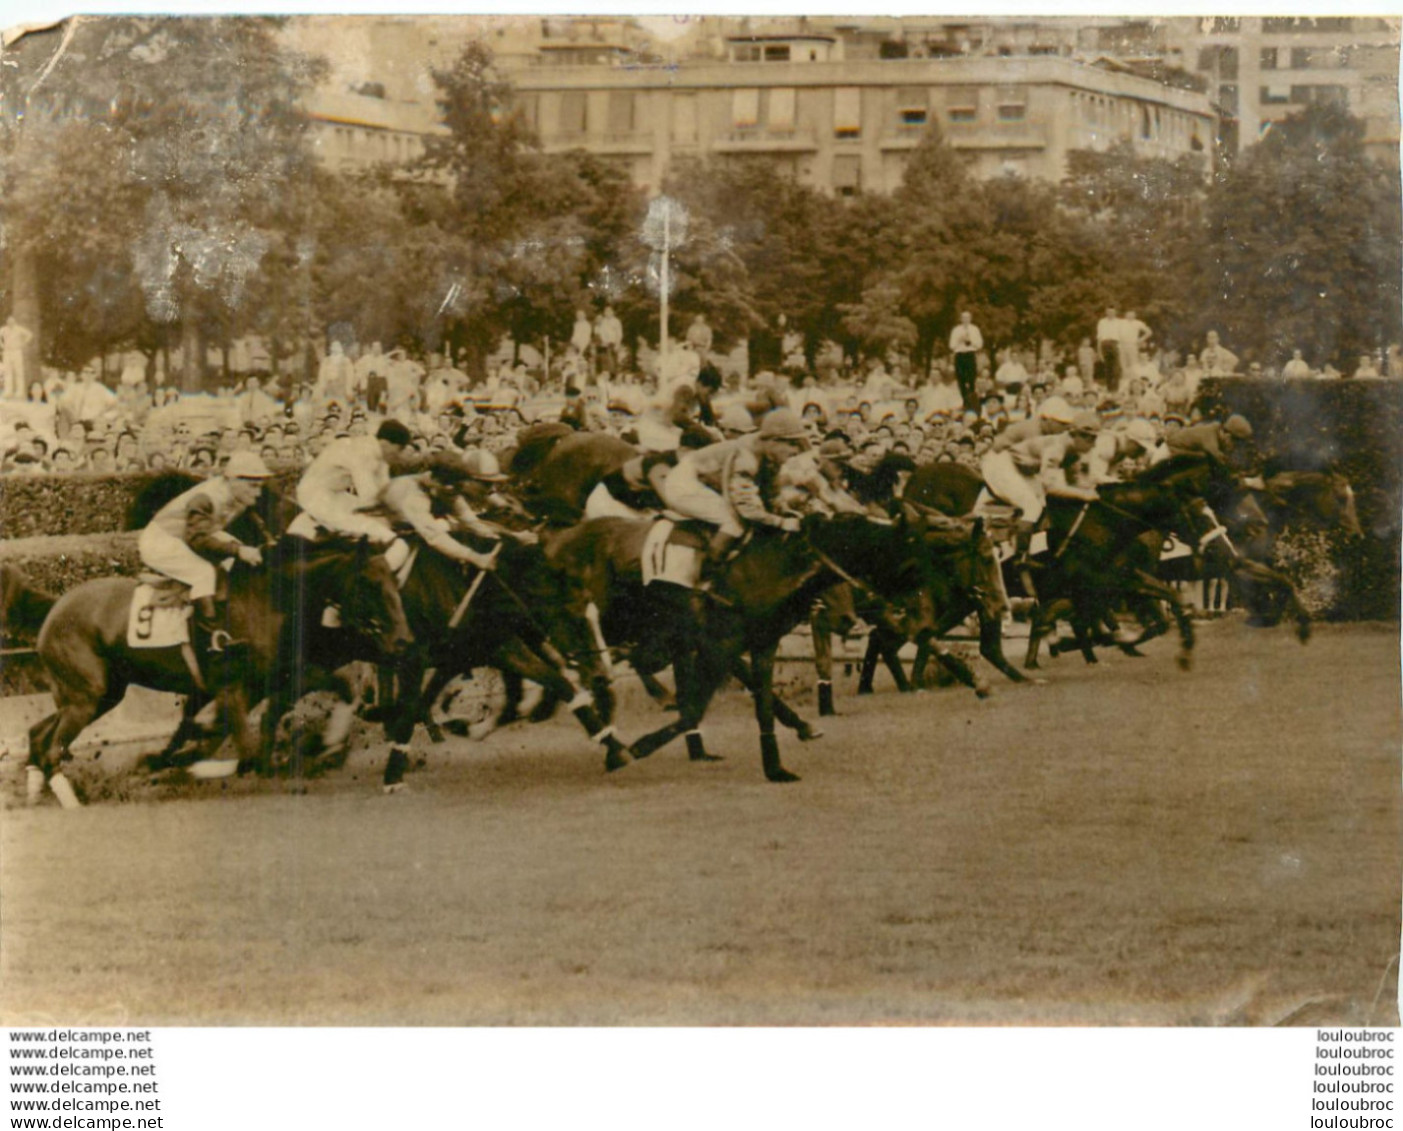 HIPPISME 06/1961 COUSIN PONS REMPORTE LE GRAND STEEPLE CHASE DE PARIS PHOTO DE PRESSE 18X13CM R3 - Sport